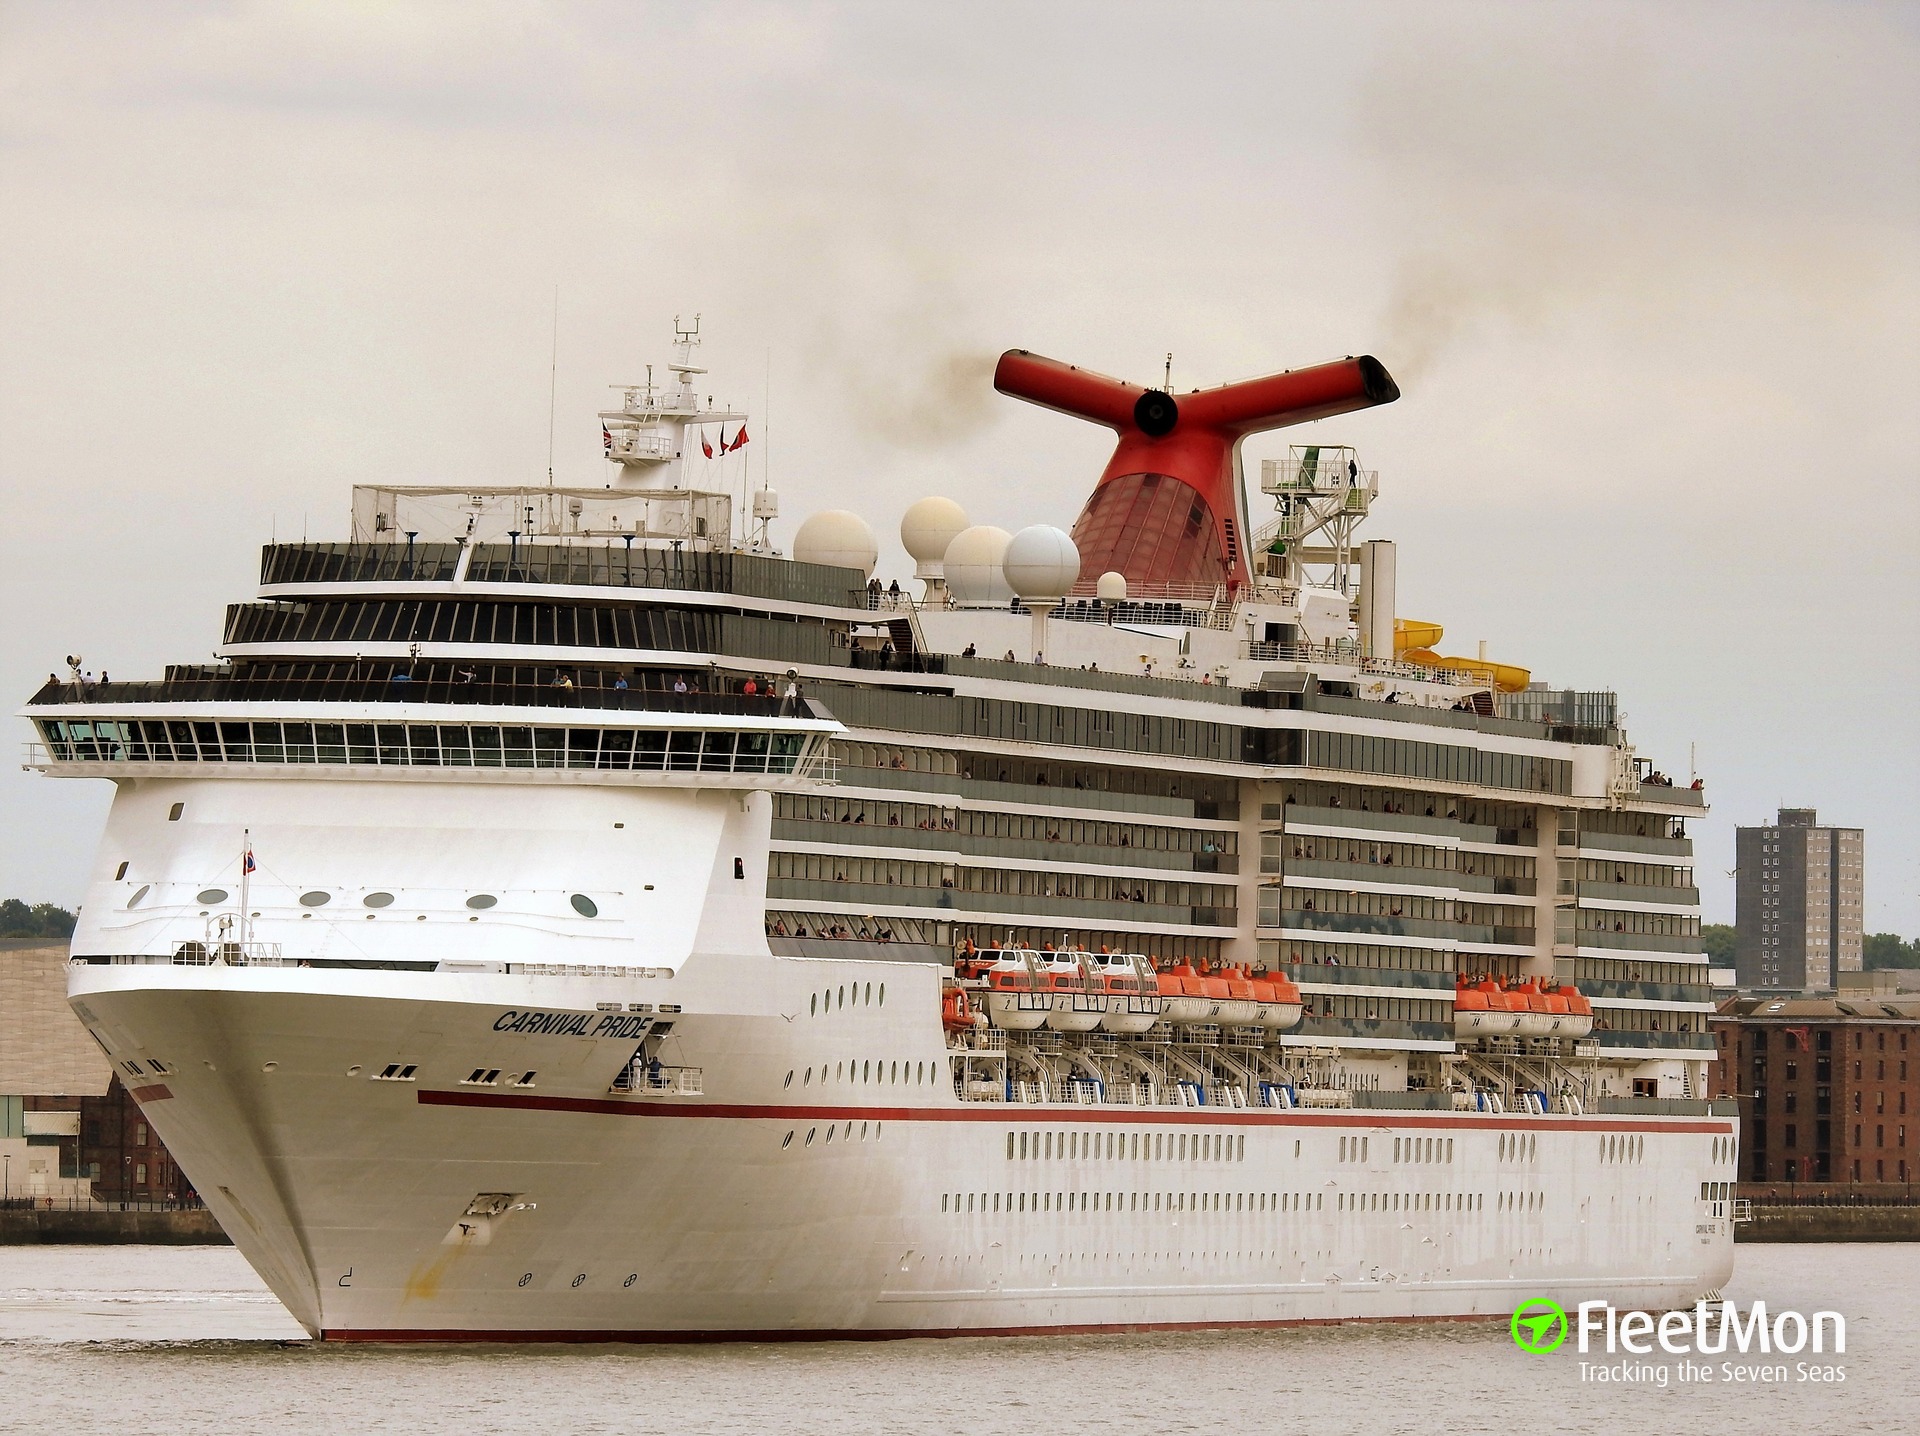 CARNIVAL PRIDE, Carnival Cruise Lines' 88,500-gross-registe…